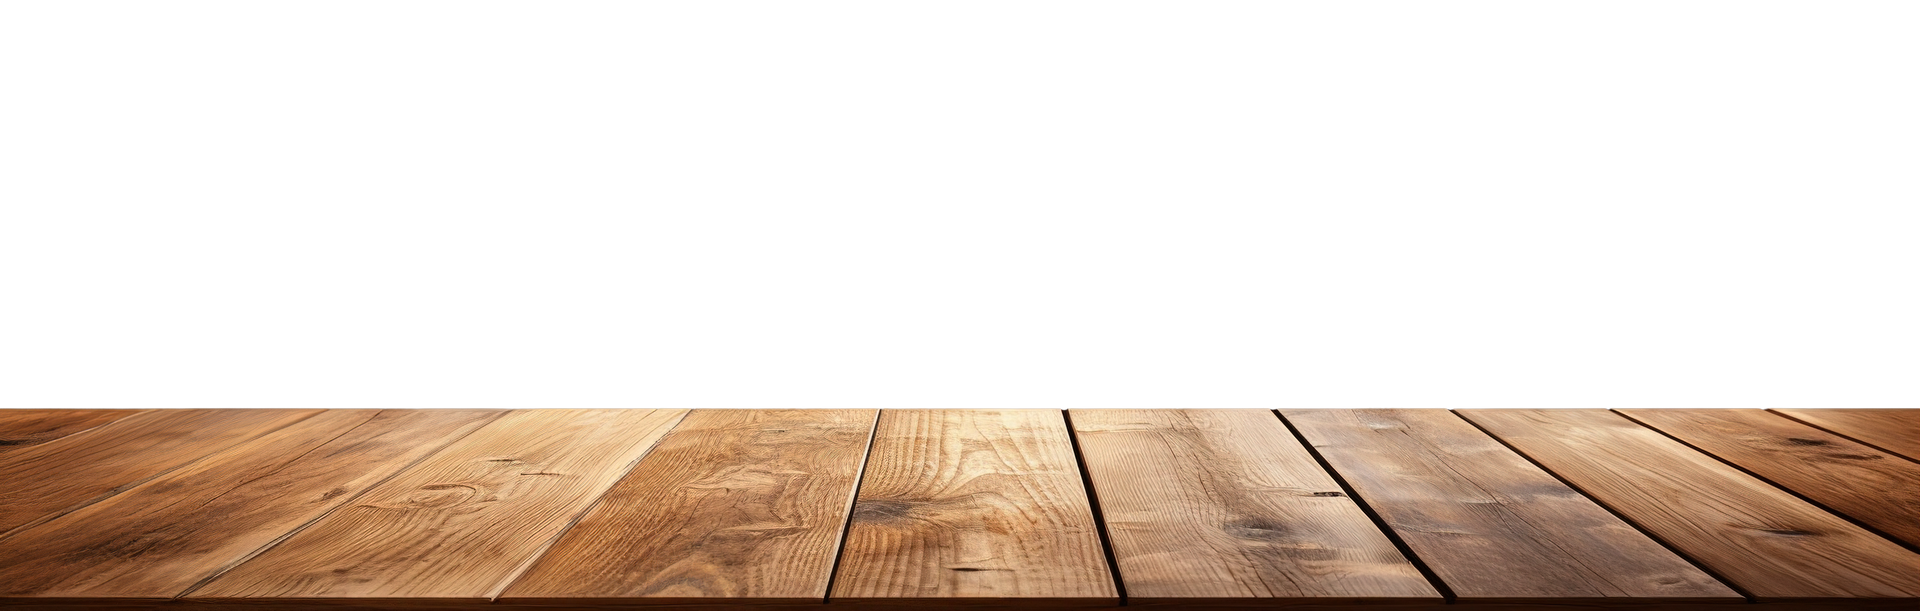 Terrasse faite de lames en bois